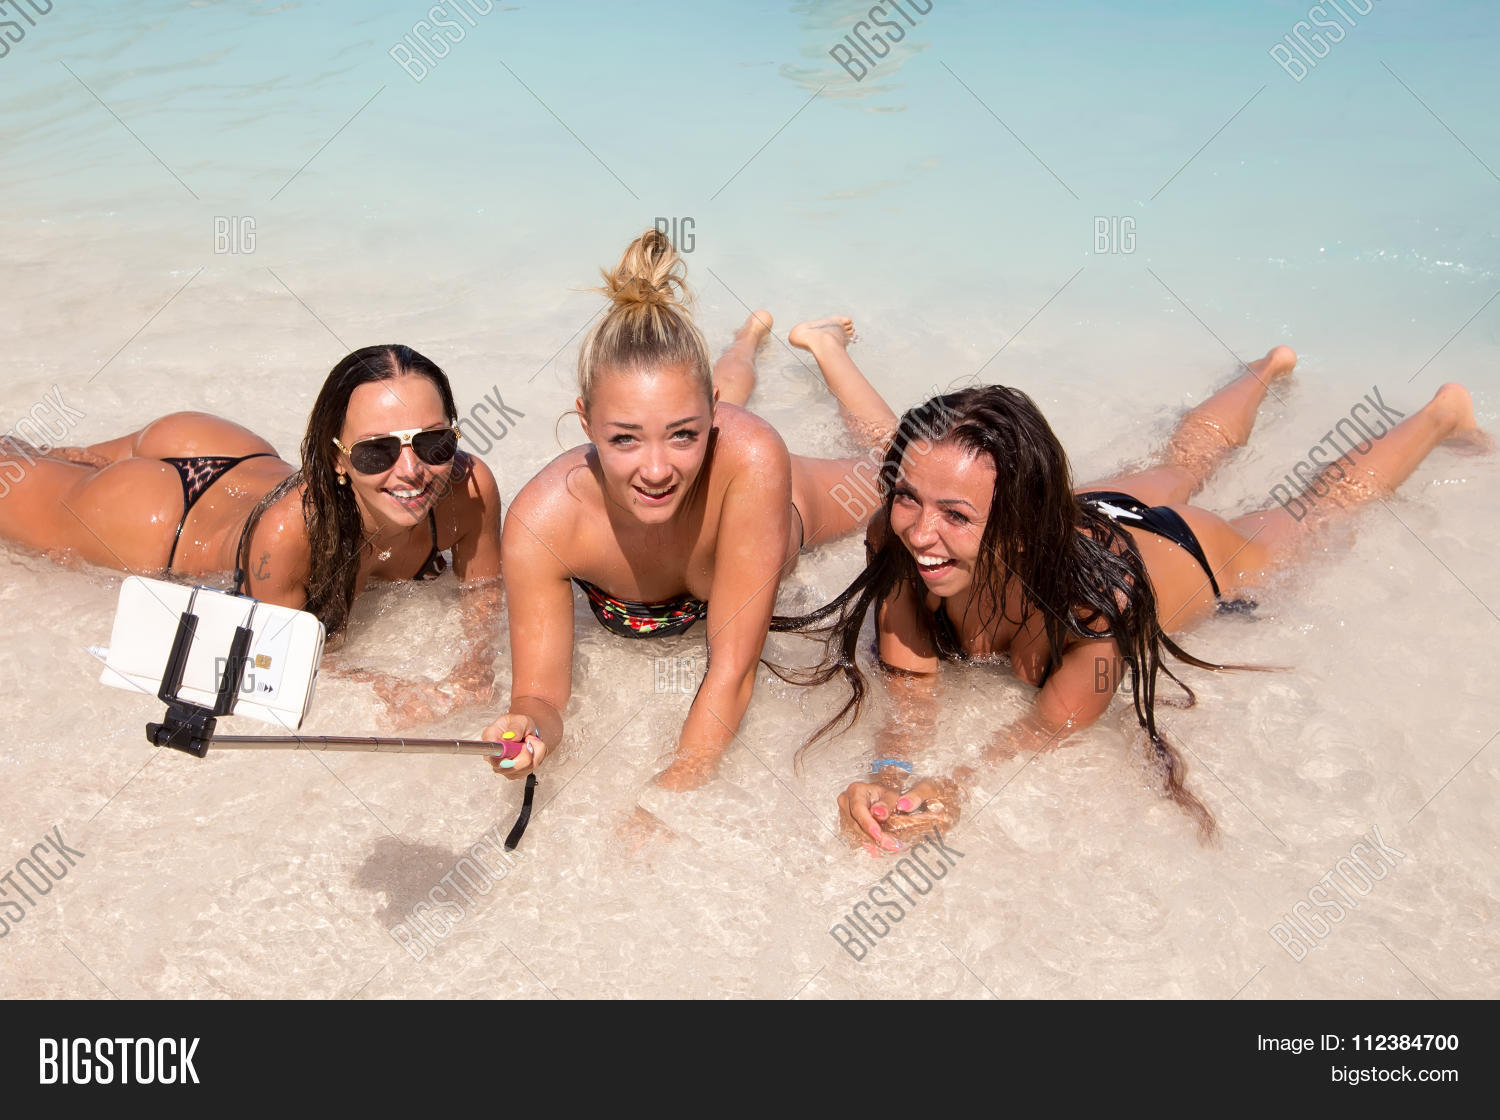 Nude Beach Selfies find paypigs